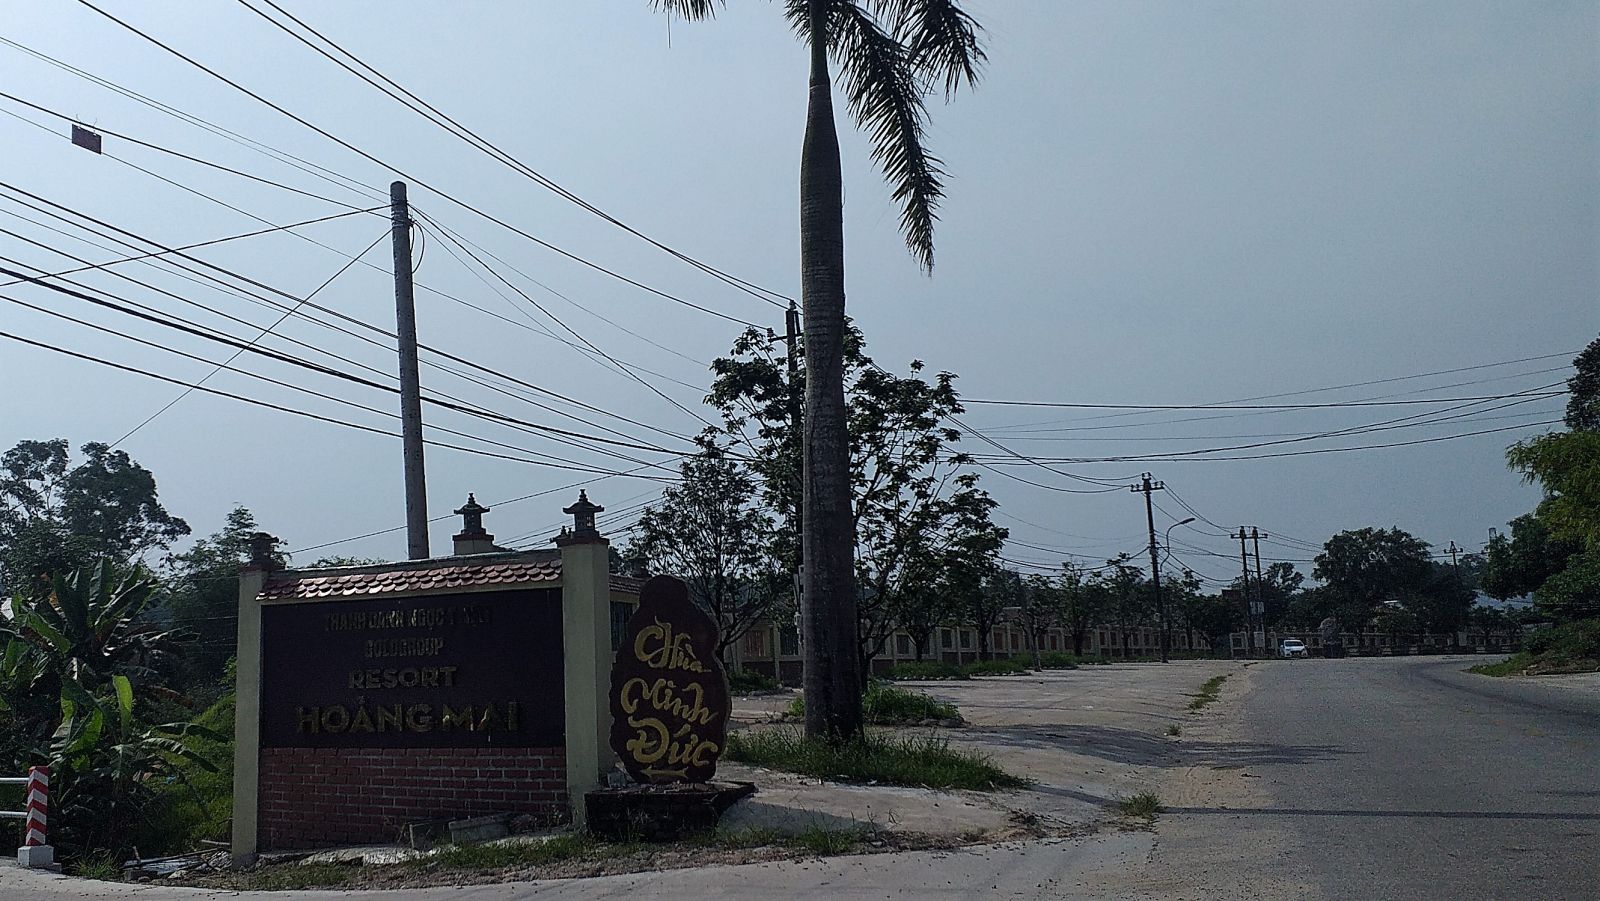 Resort Hoàng Mai với hệ thống tường rào kiên cố bên ngoài dài hàng trăm mét được cho là lấn chiếm đất công bị yêu cầu xử lý dứt điểm 